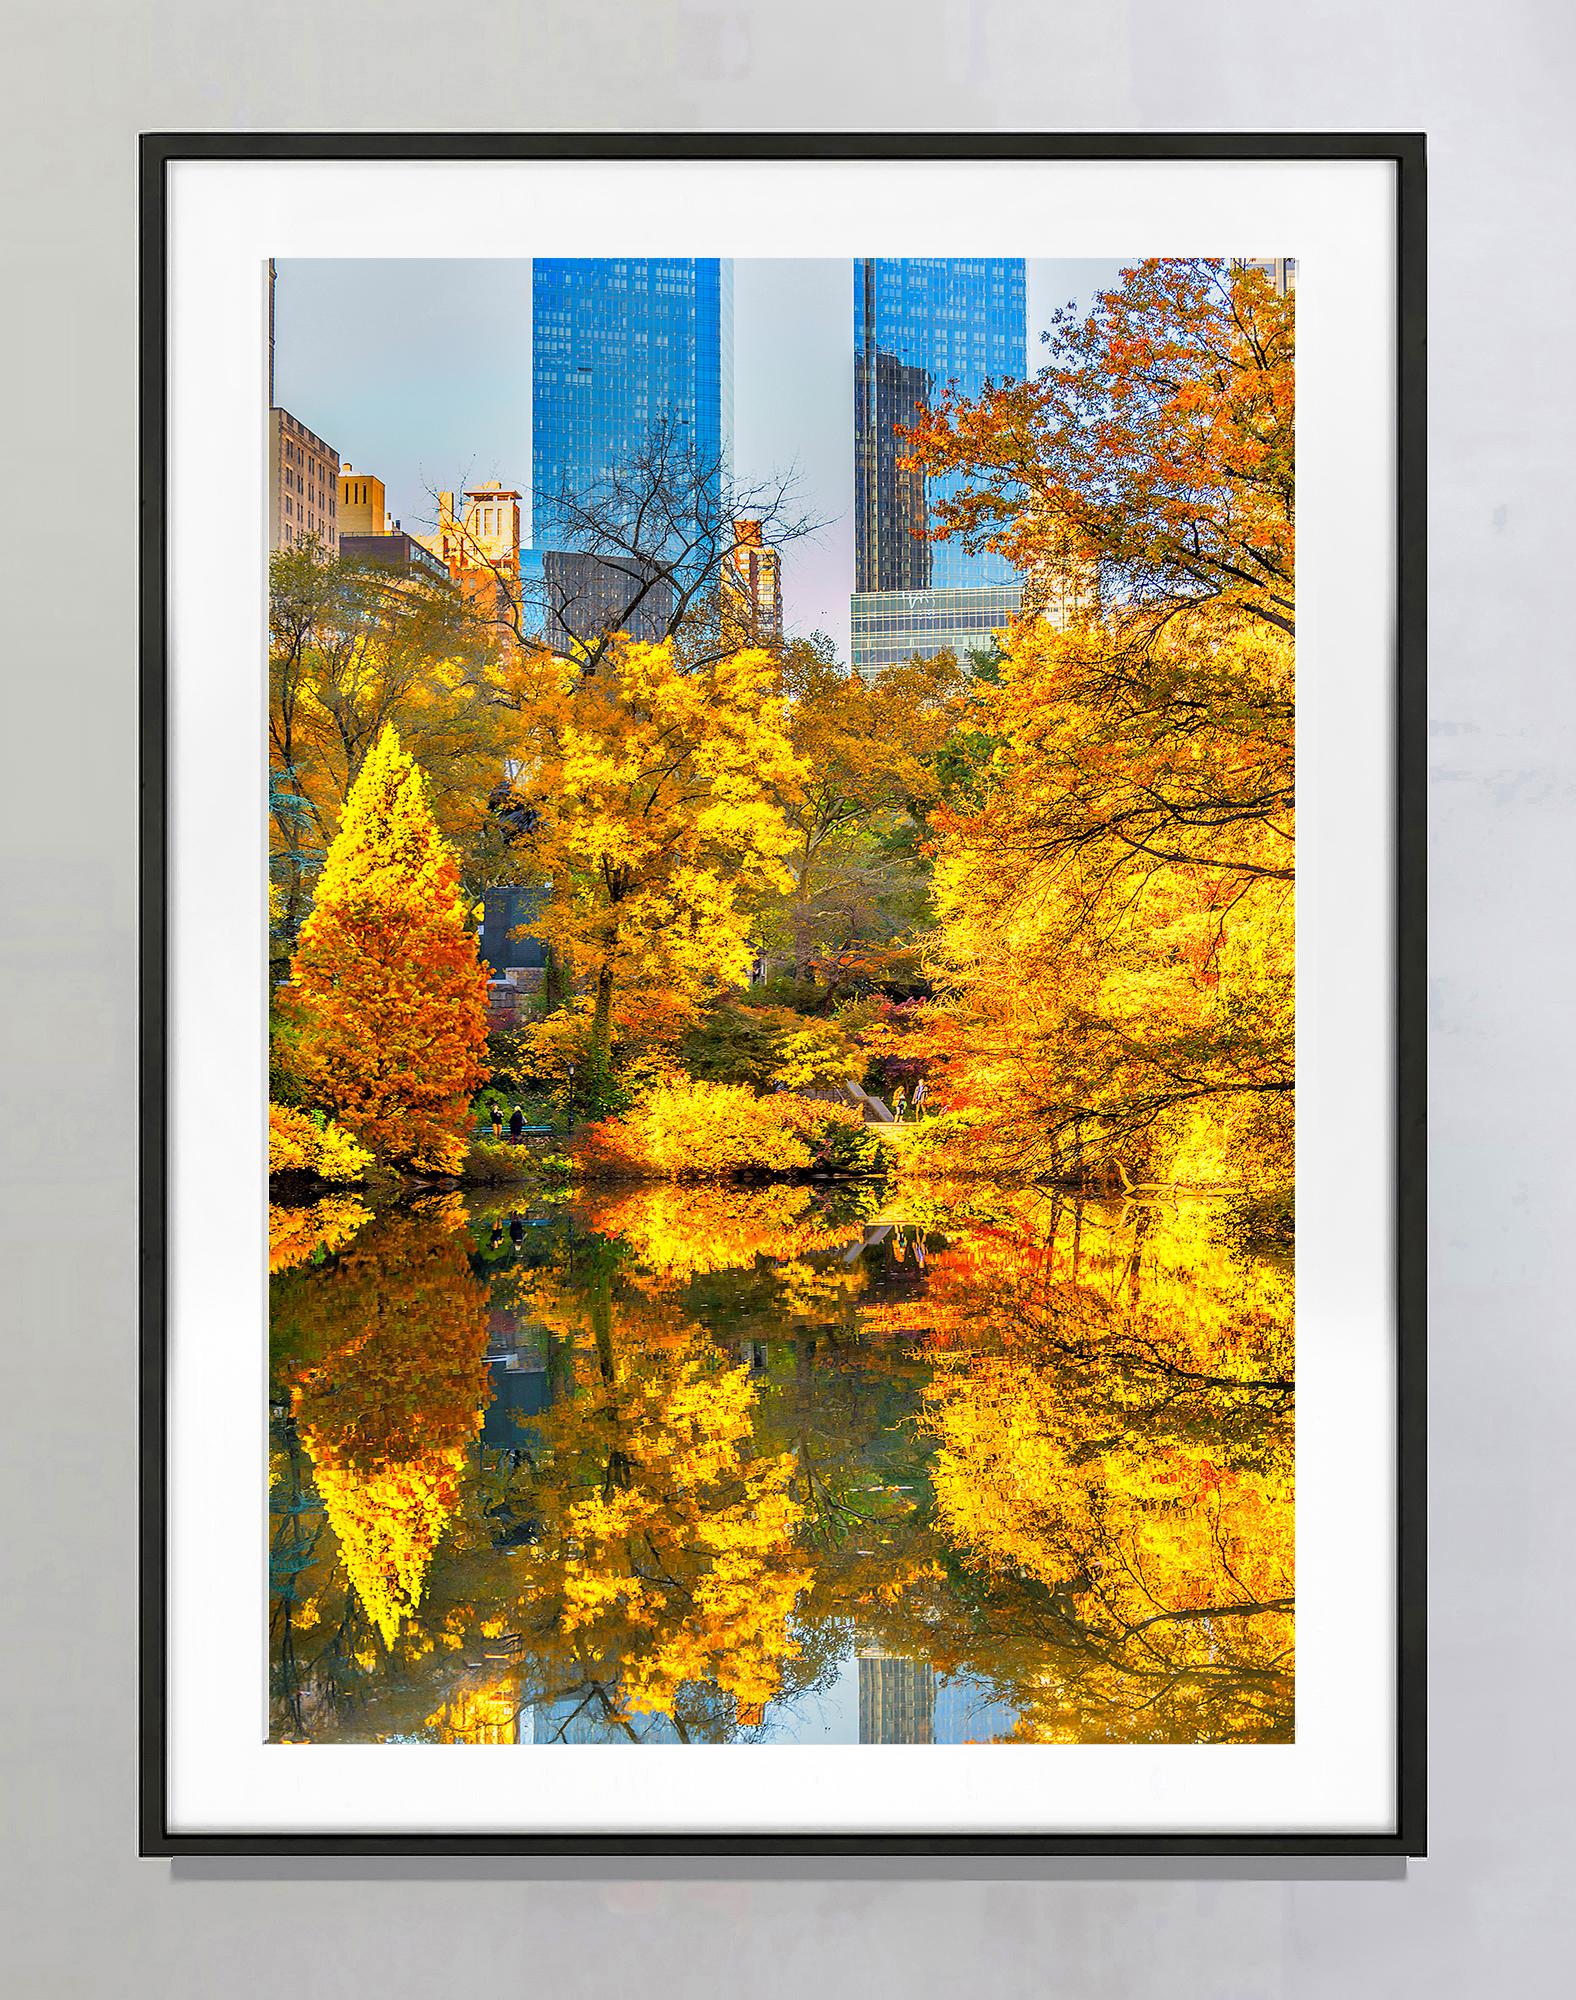 Naturfotografie in der Stadt. Das Herbstlaub des Central Park verwandelt sich in ein reizvolles abstraktes Muster, in dem natürliche organische Formen mit den architektonischen Formen der umliegenden Wolkenkratzer interagieren.  Der Kunstfotograf